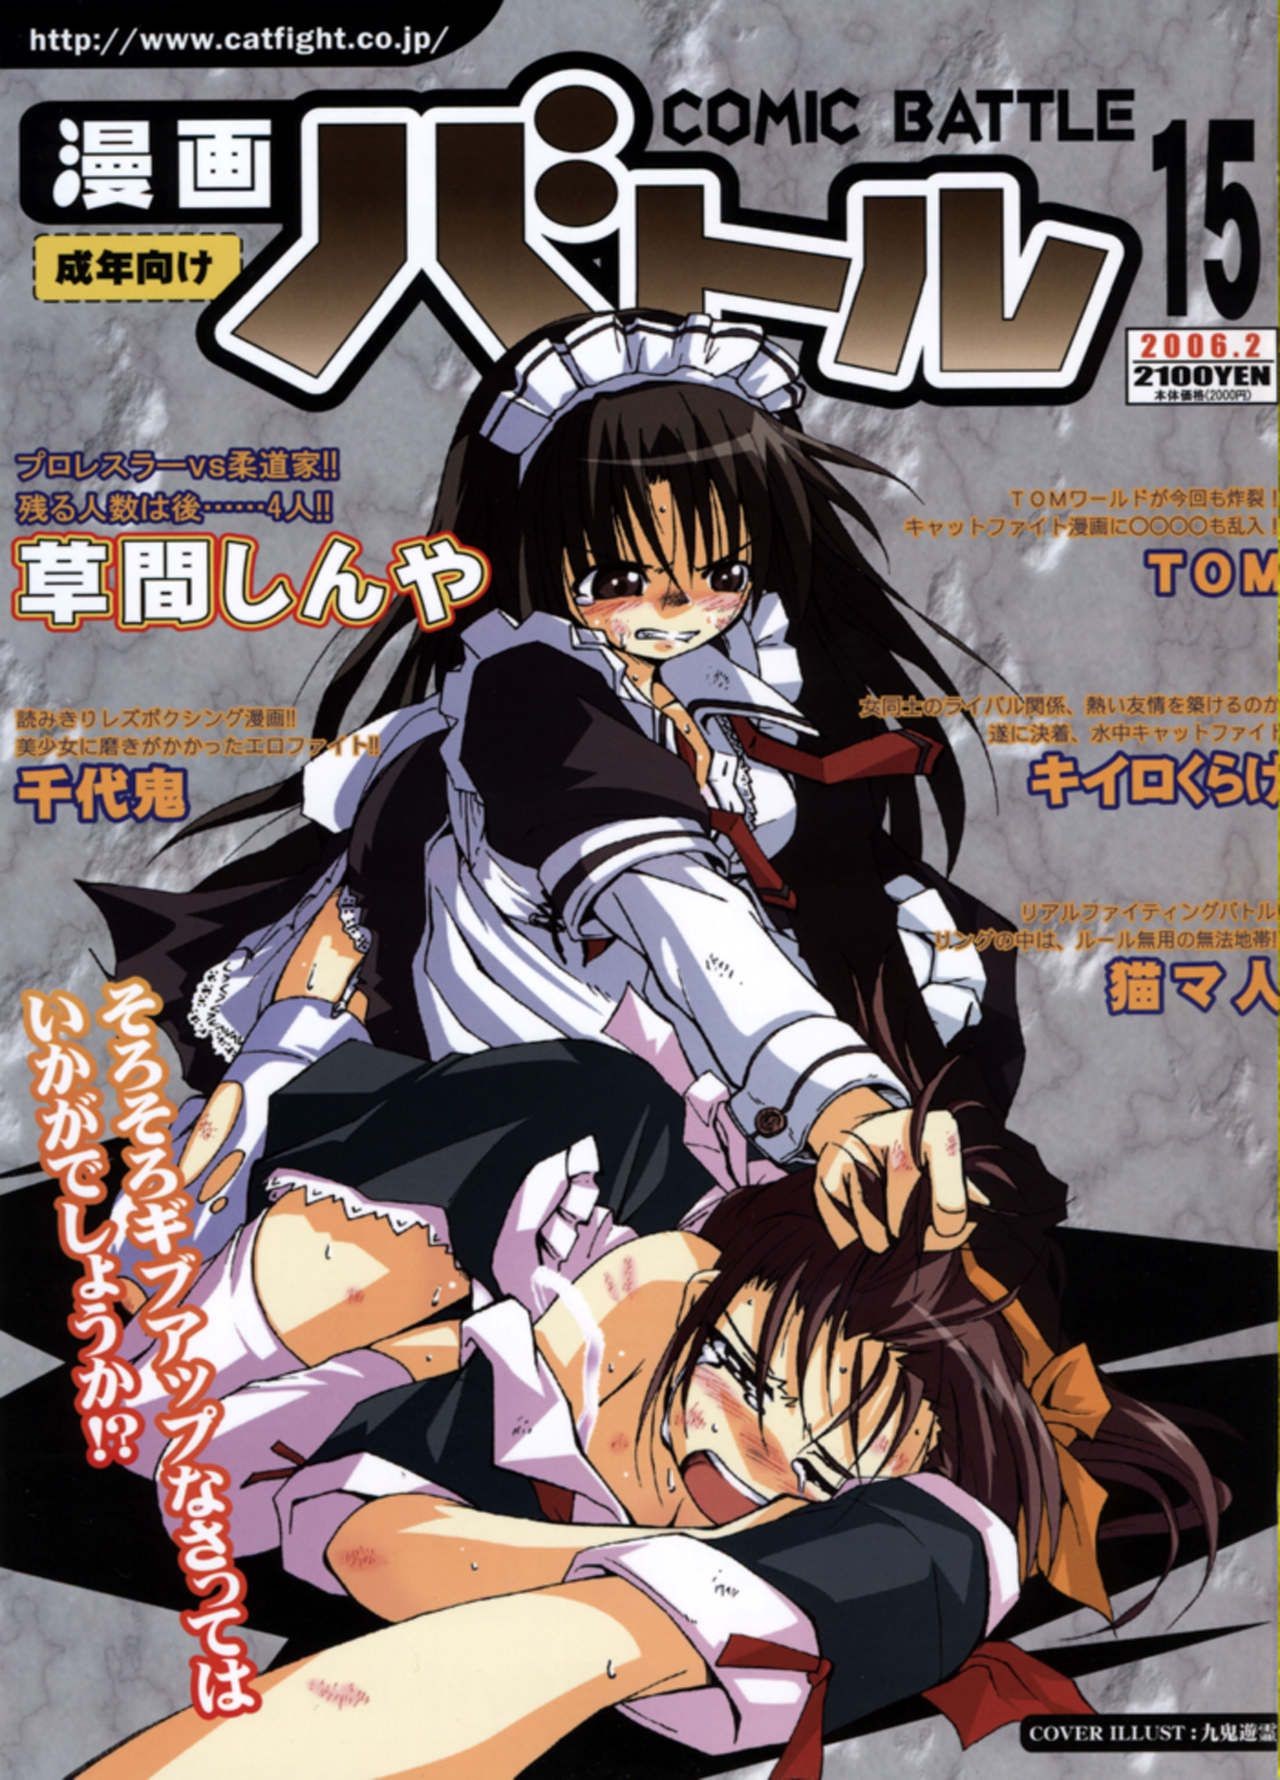 Couples Fucking Manga Battle Volume 15 Boys